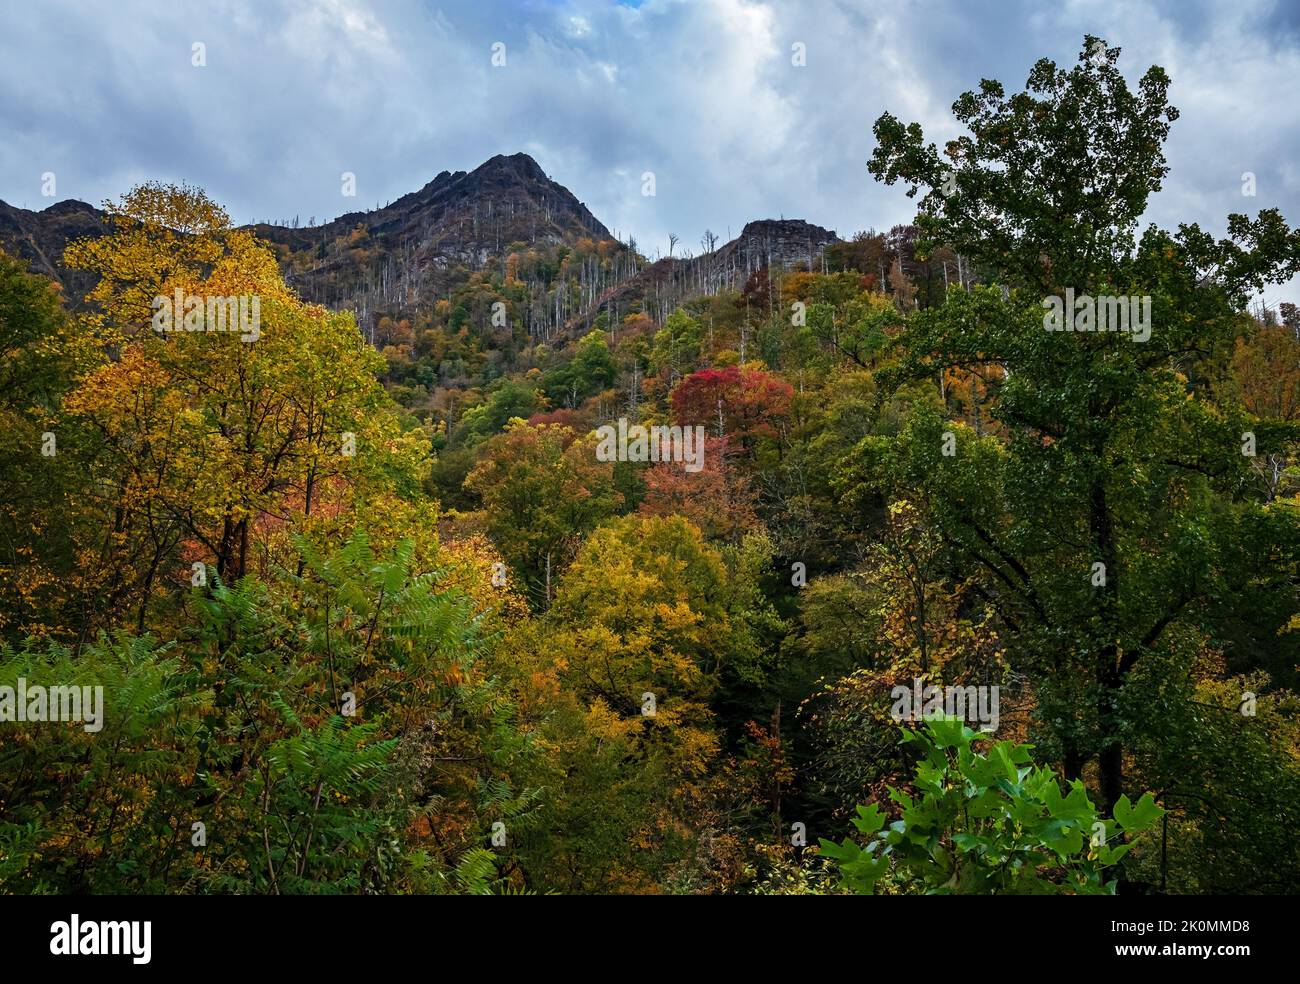 La couleur d'automne commence à dominer en automne dans la zone de Chimney Top du parc national des Great Smoky Mounrains, comté de Blount, Tennessee Banque D'Images